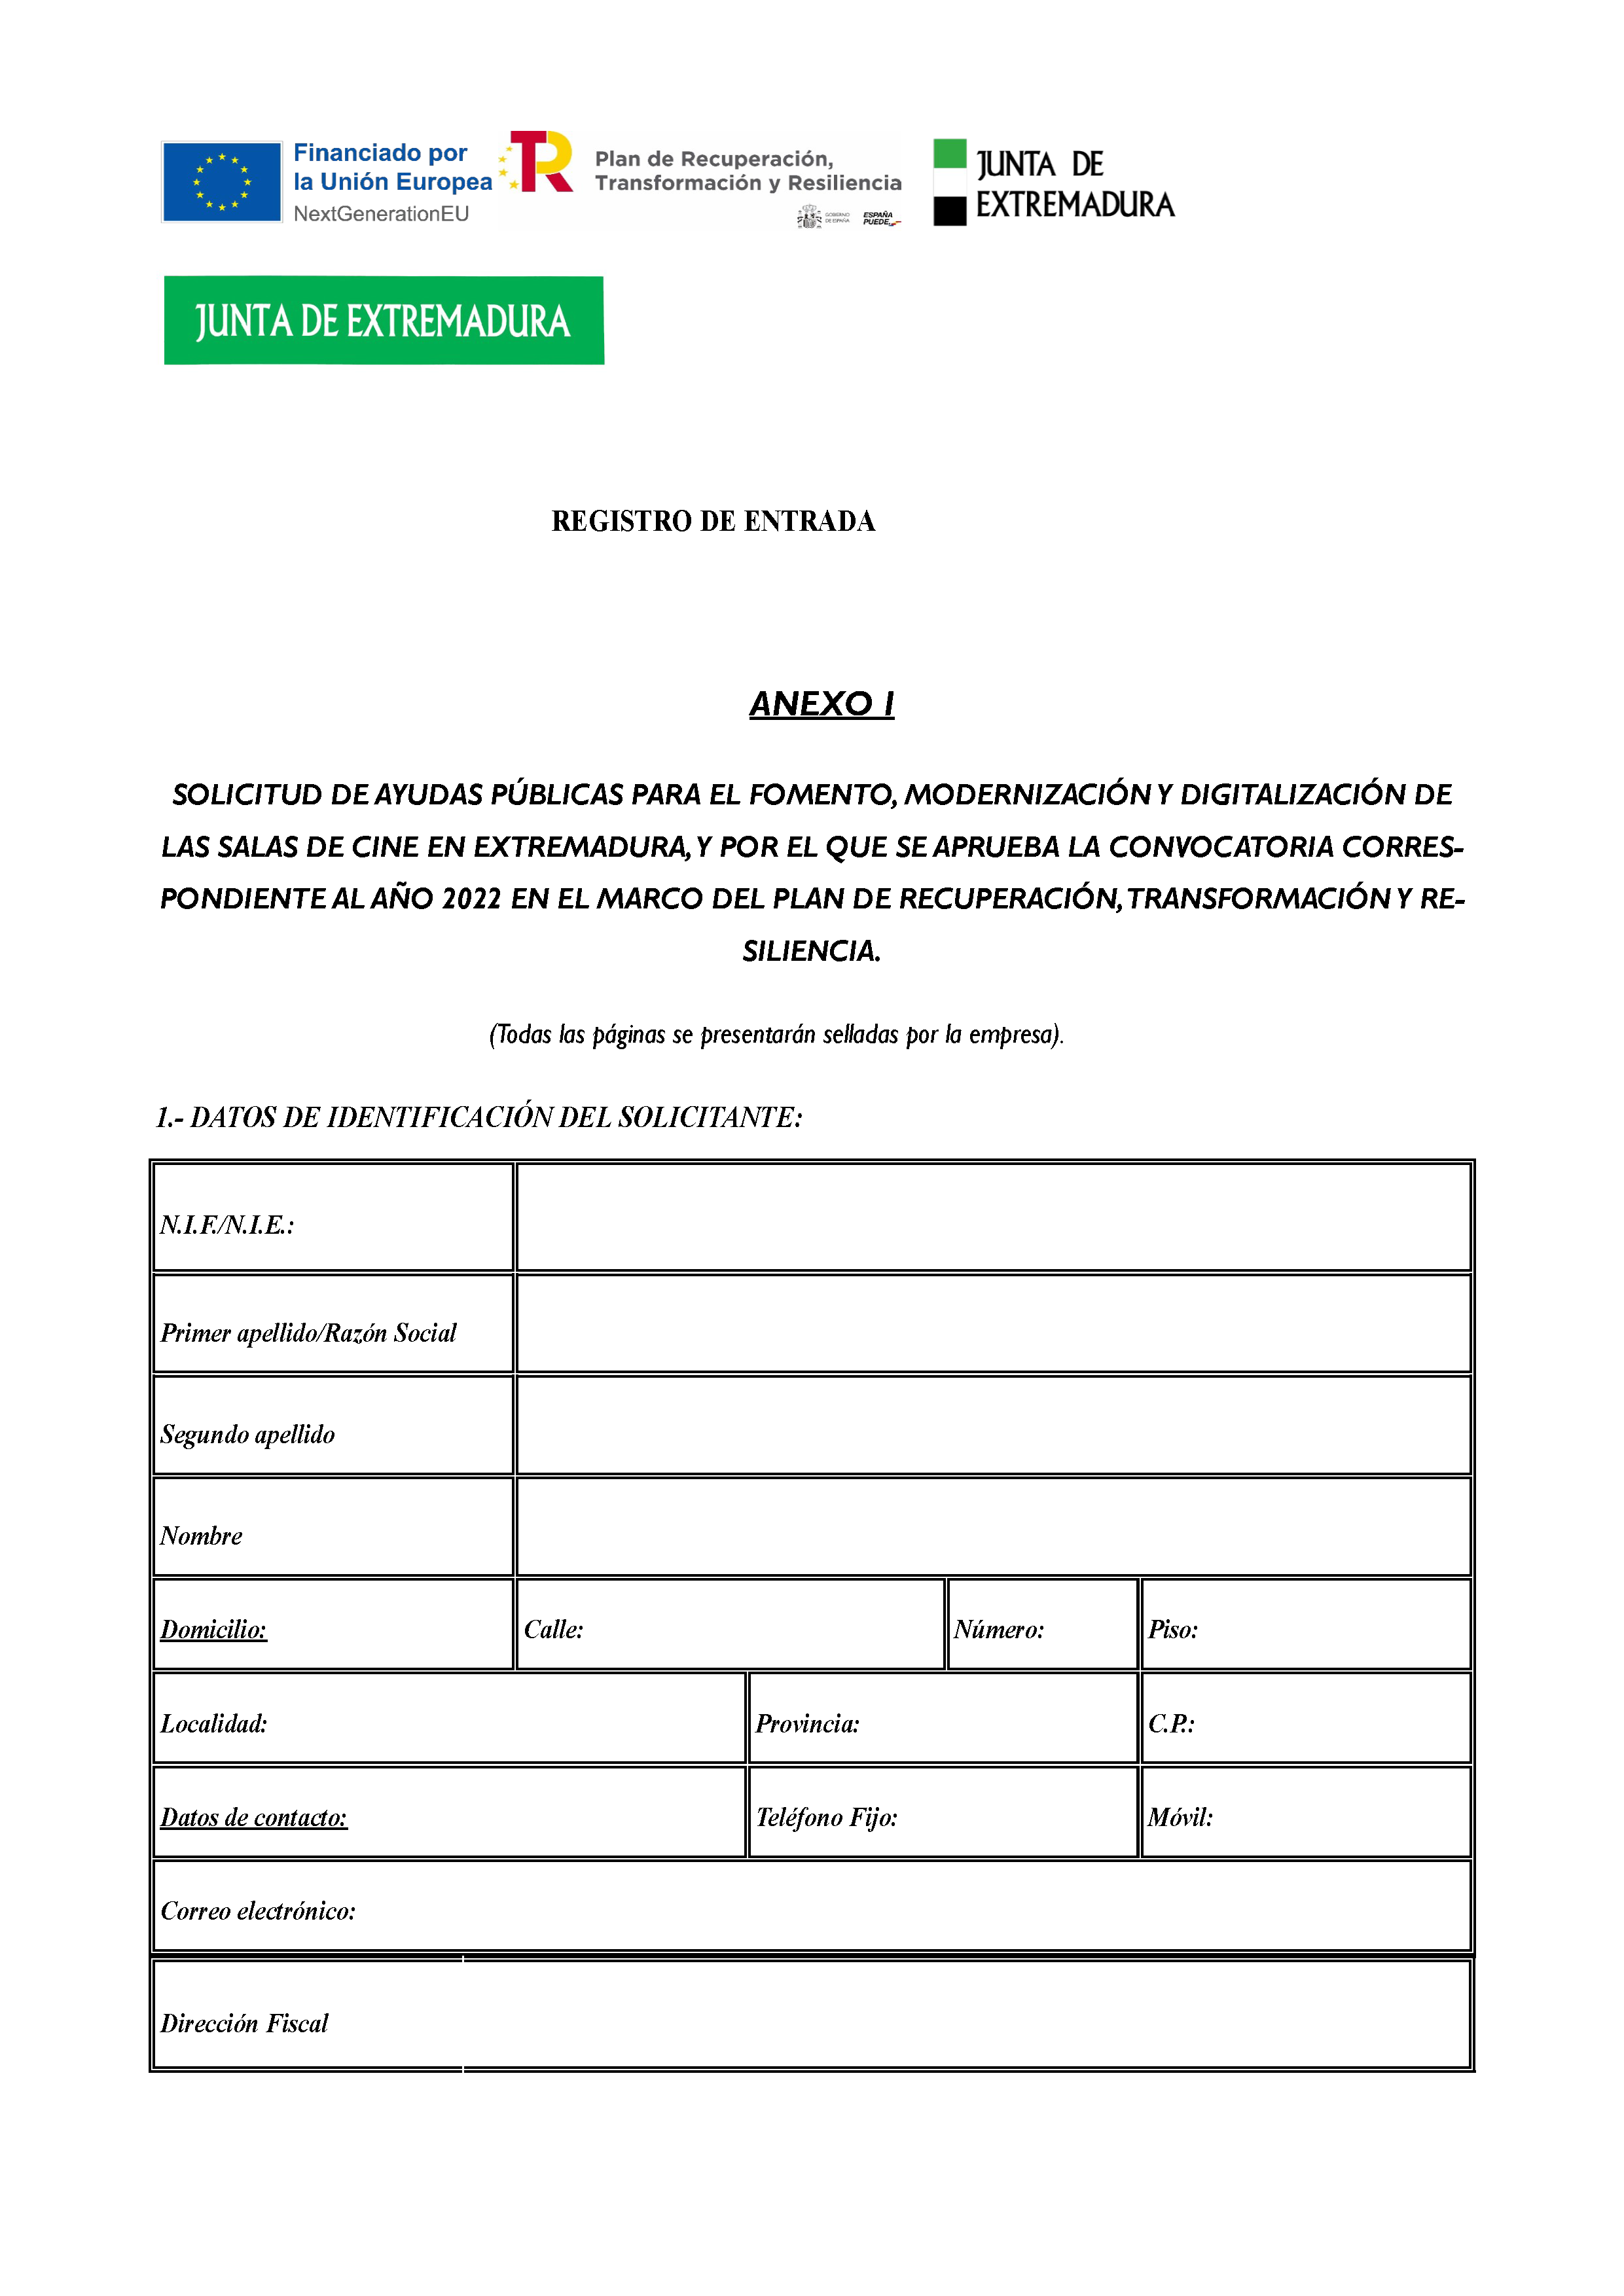 ANEXO SOLICITUD DE AYUDAS PÚBLICAS PARA EL FOMENTO, MODERNIZACIÓN Y DIGITALIZACIÓN DE SALAS DE CINE DE EXTREMADURA Pag 1